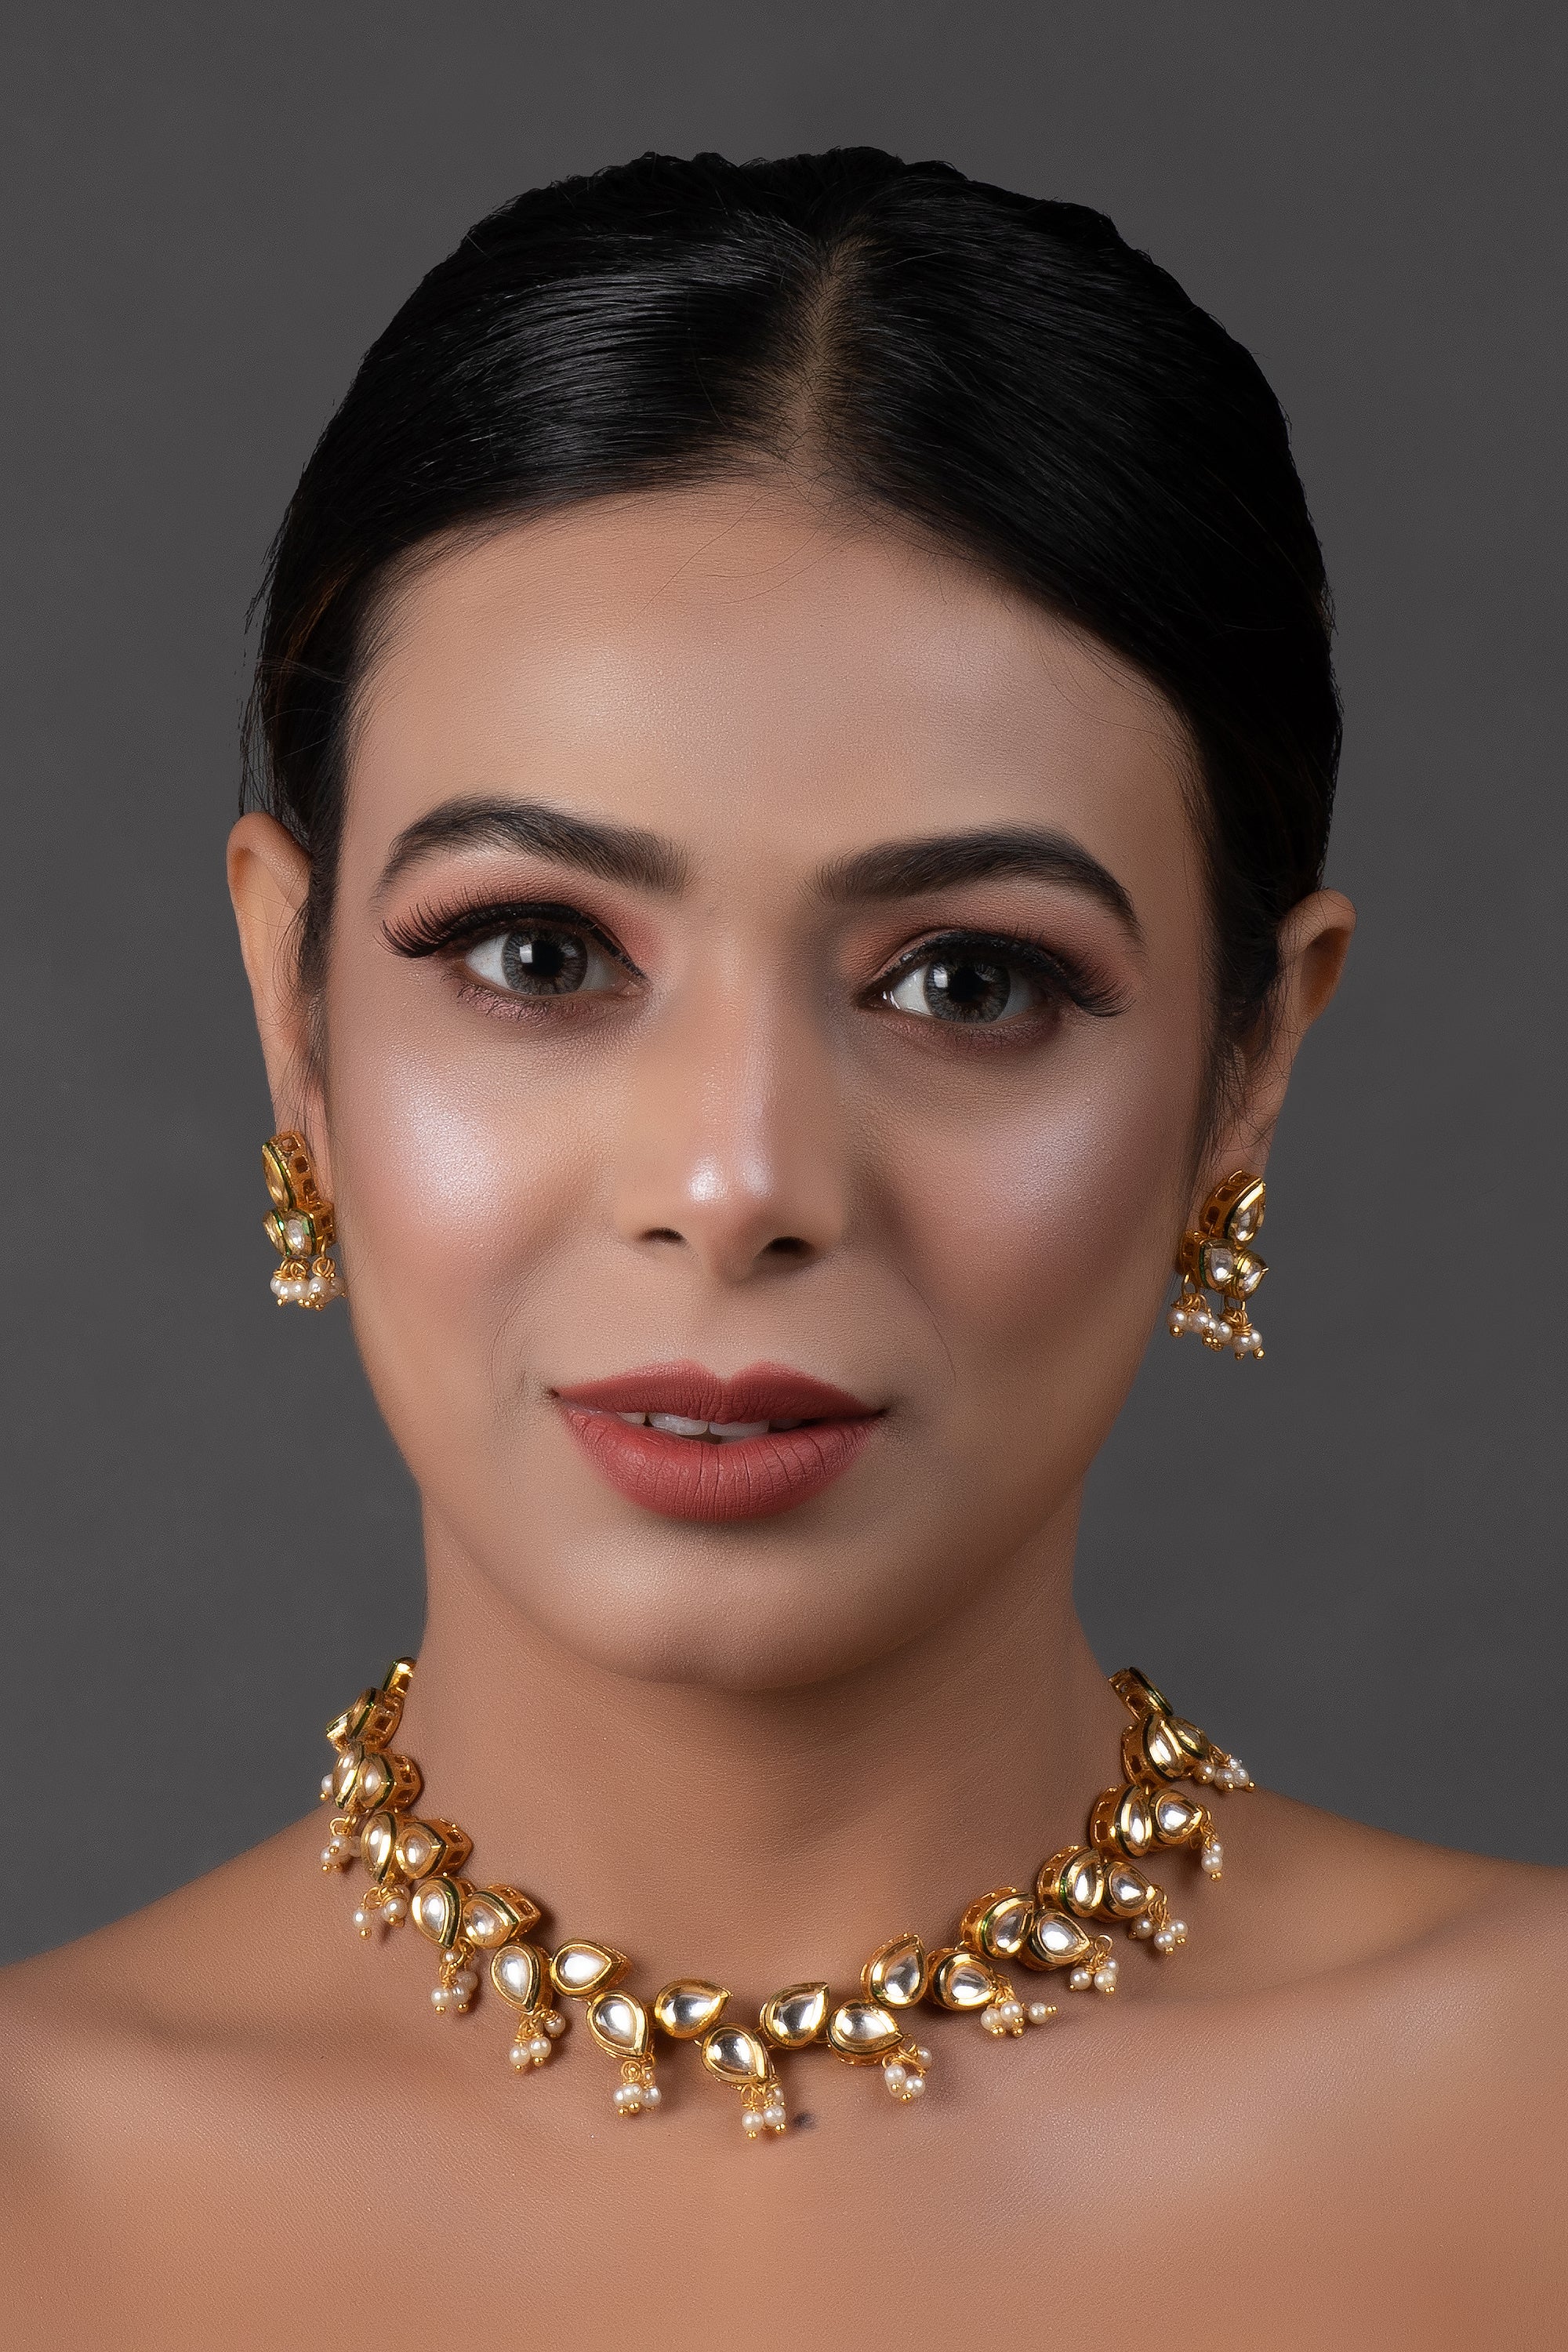 Women's  Elegant Tear drop shaped necklace with earrings - Femizen